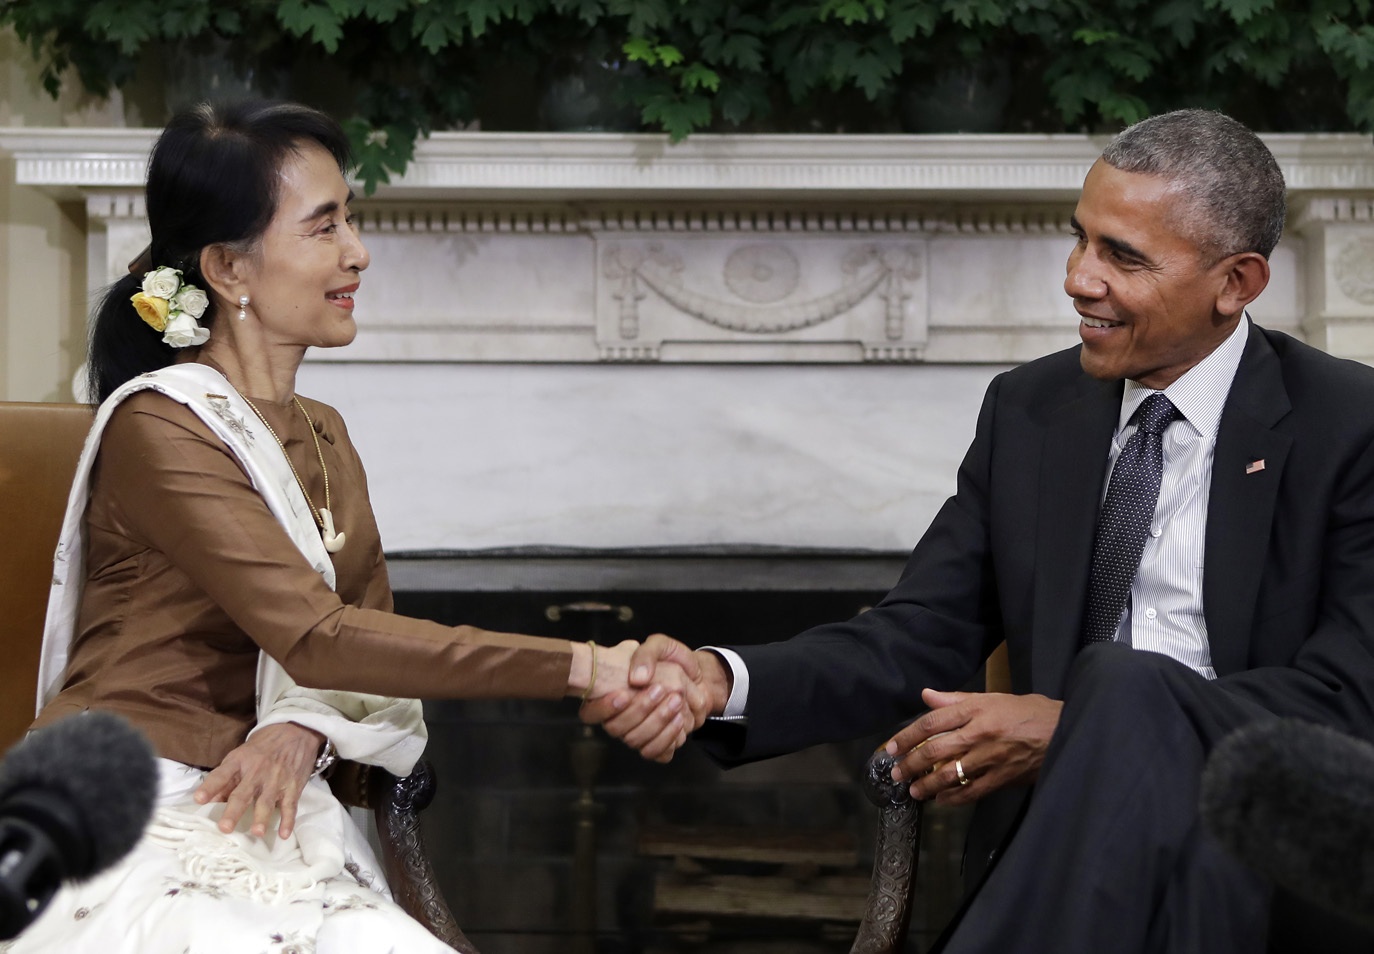 Aung San Suu Kyi och Barack Obama i Washington DC i september
2016. Vid denna tid knöt stora delar av omvärlden ännu förhoppningar till den burmesiska reformpolitiken.